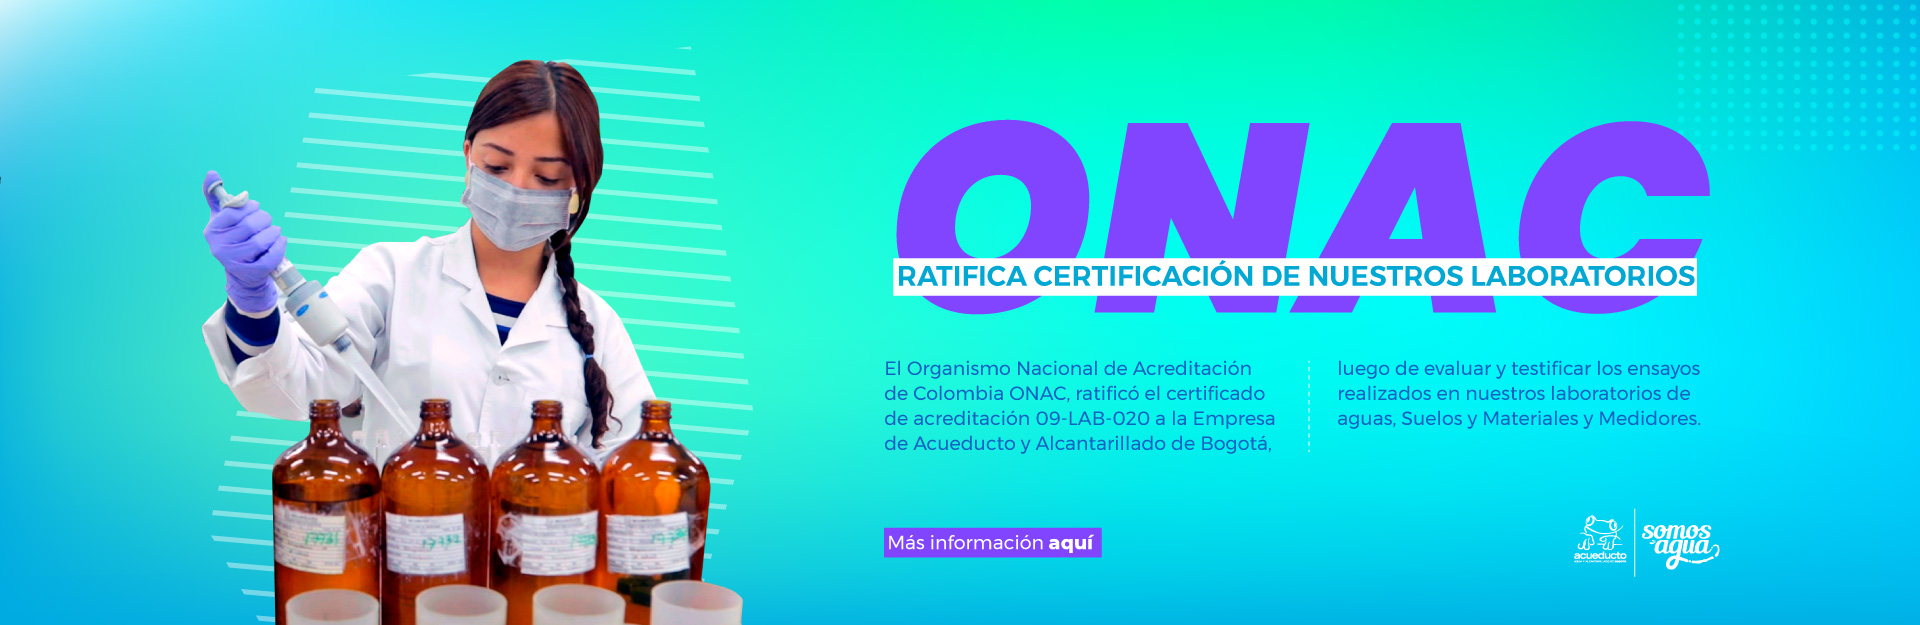 ONAC ratifica certificación de nuestros laboratorios